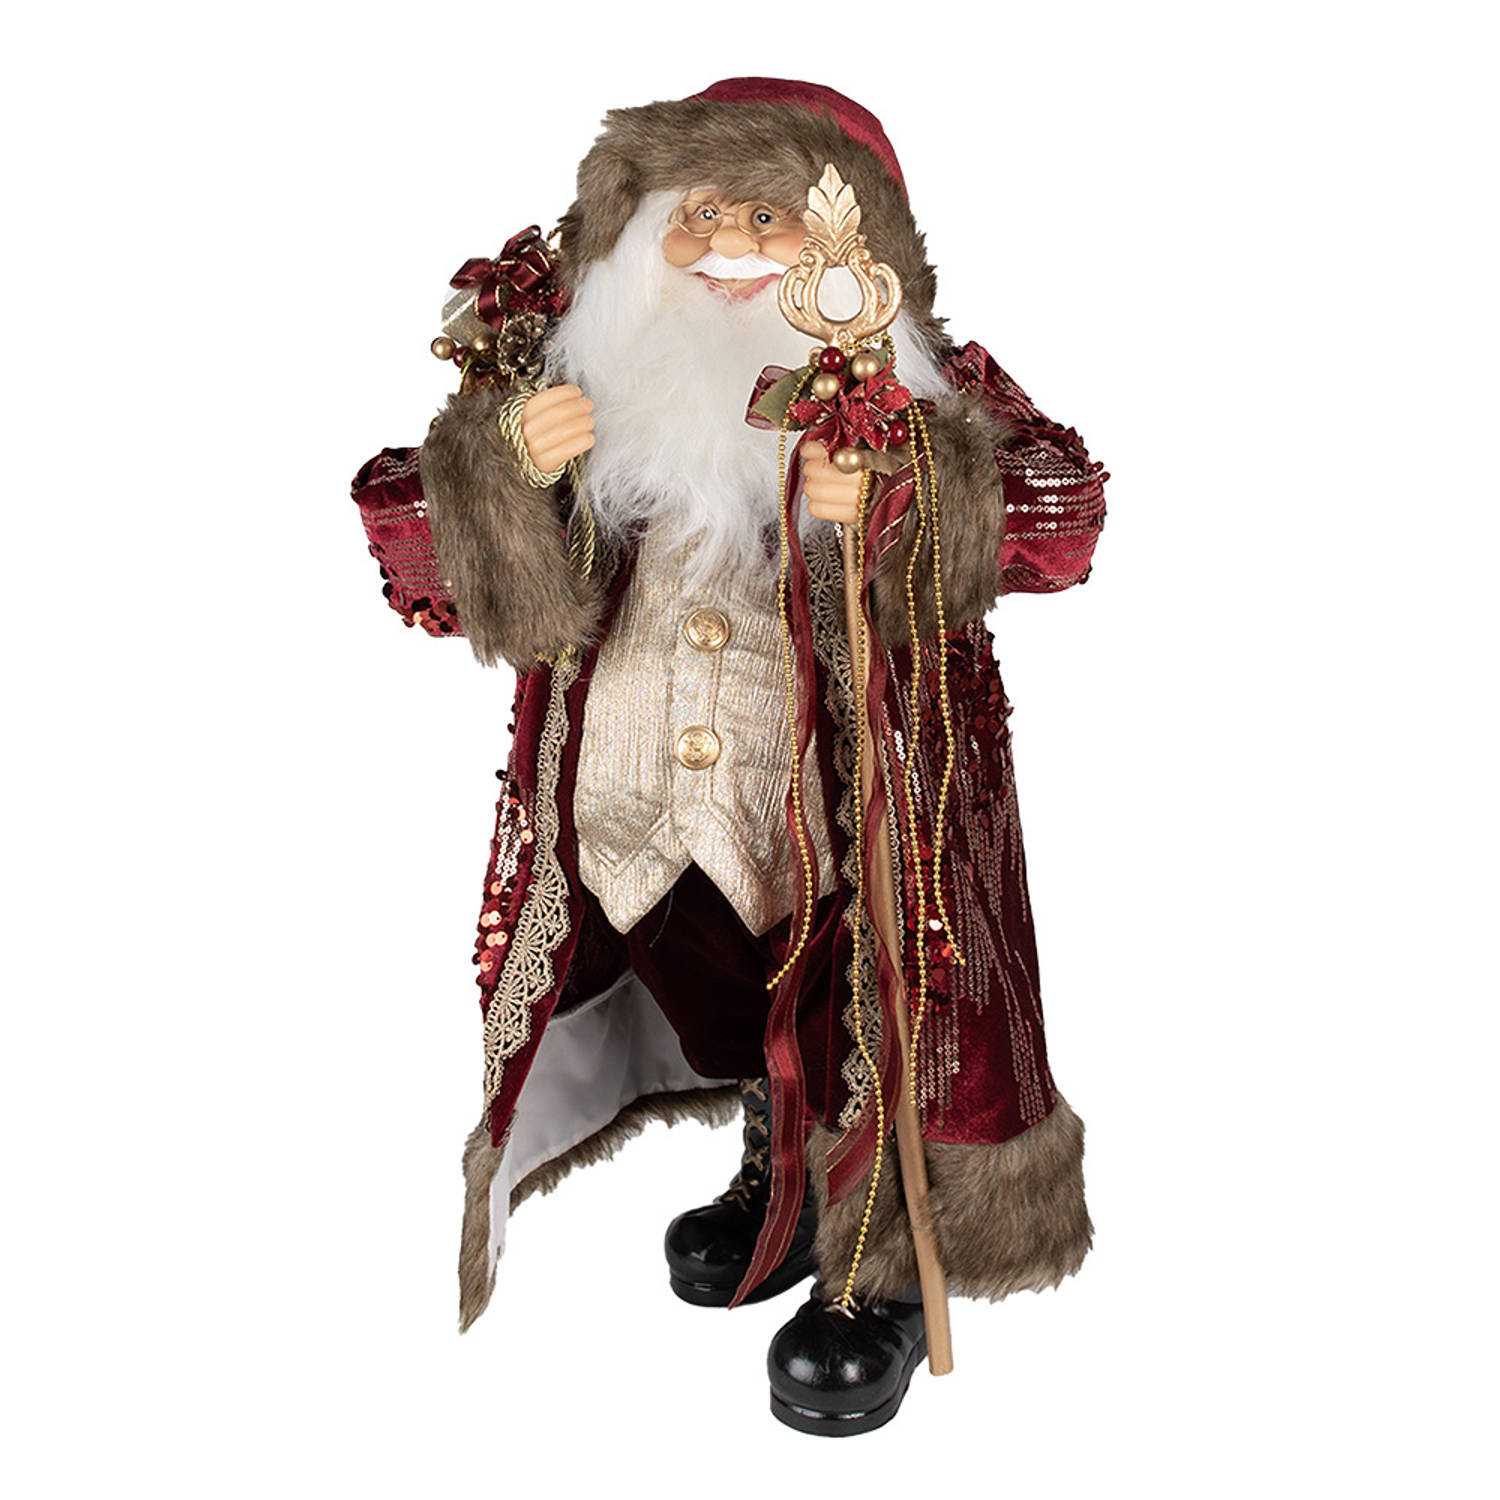 HAES DECO - Kerstman deco Figuur - Formaat 29x20x63 cm - Collectie: Traditional Santa - Kleur Rood - Materiaal Textiel op kunststof - Kerst Figuur, Kerstdecoratie